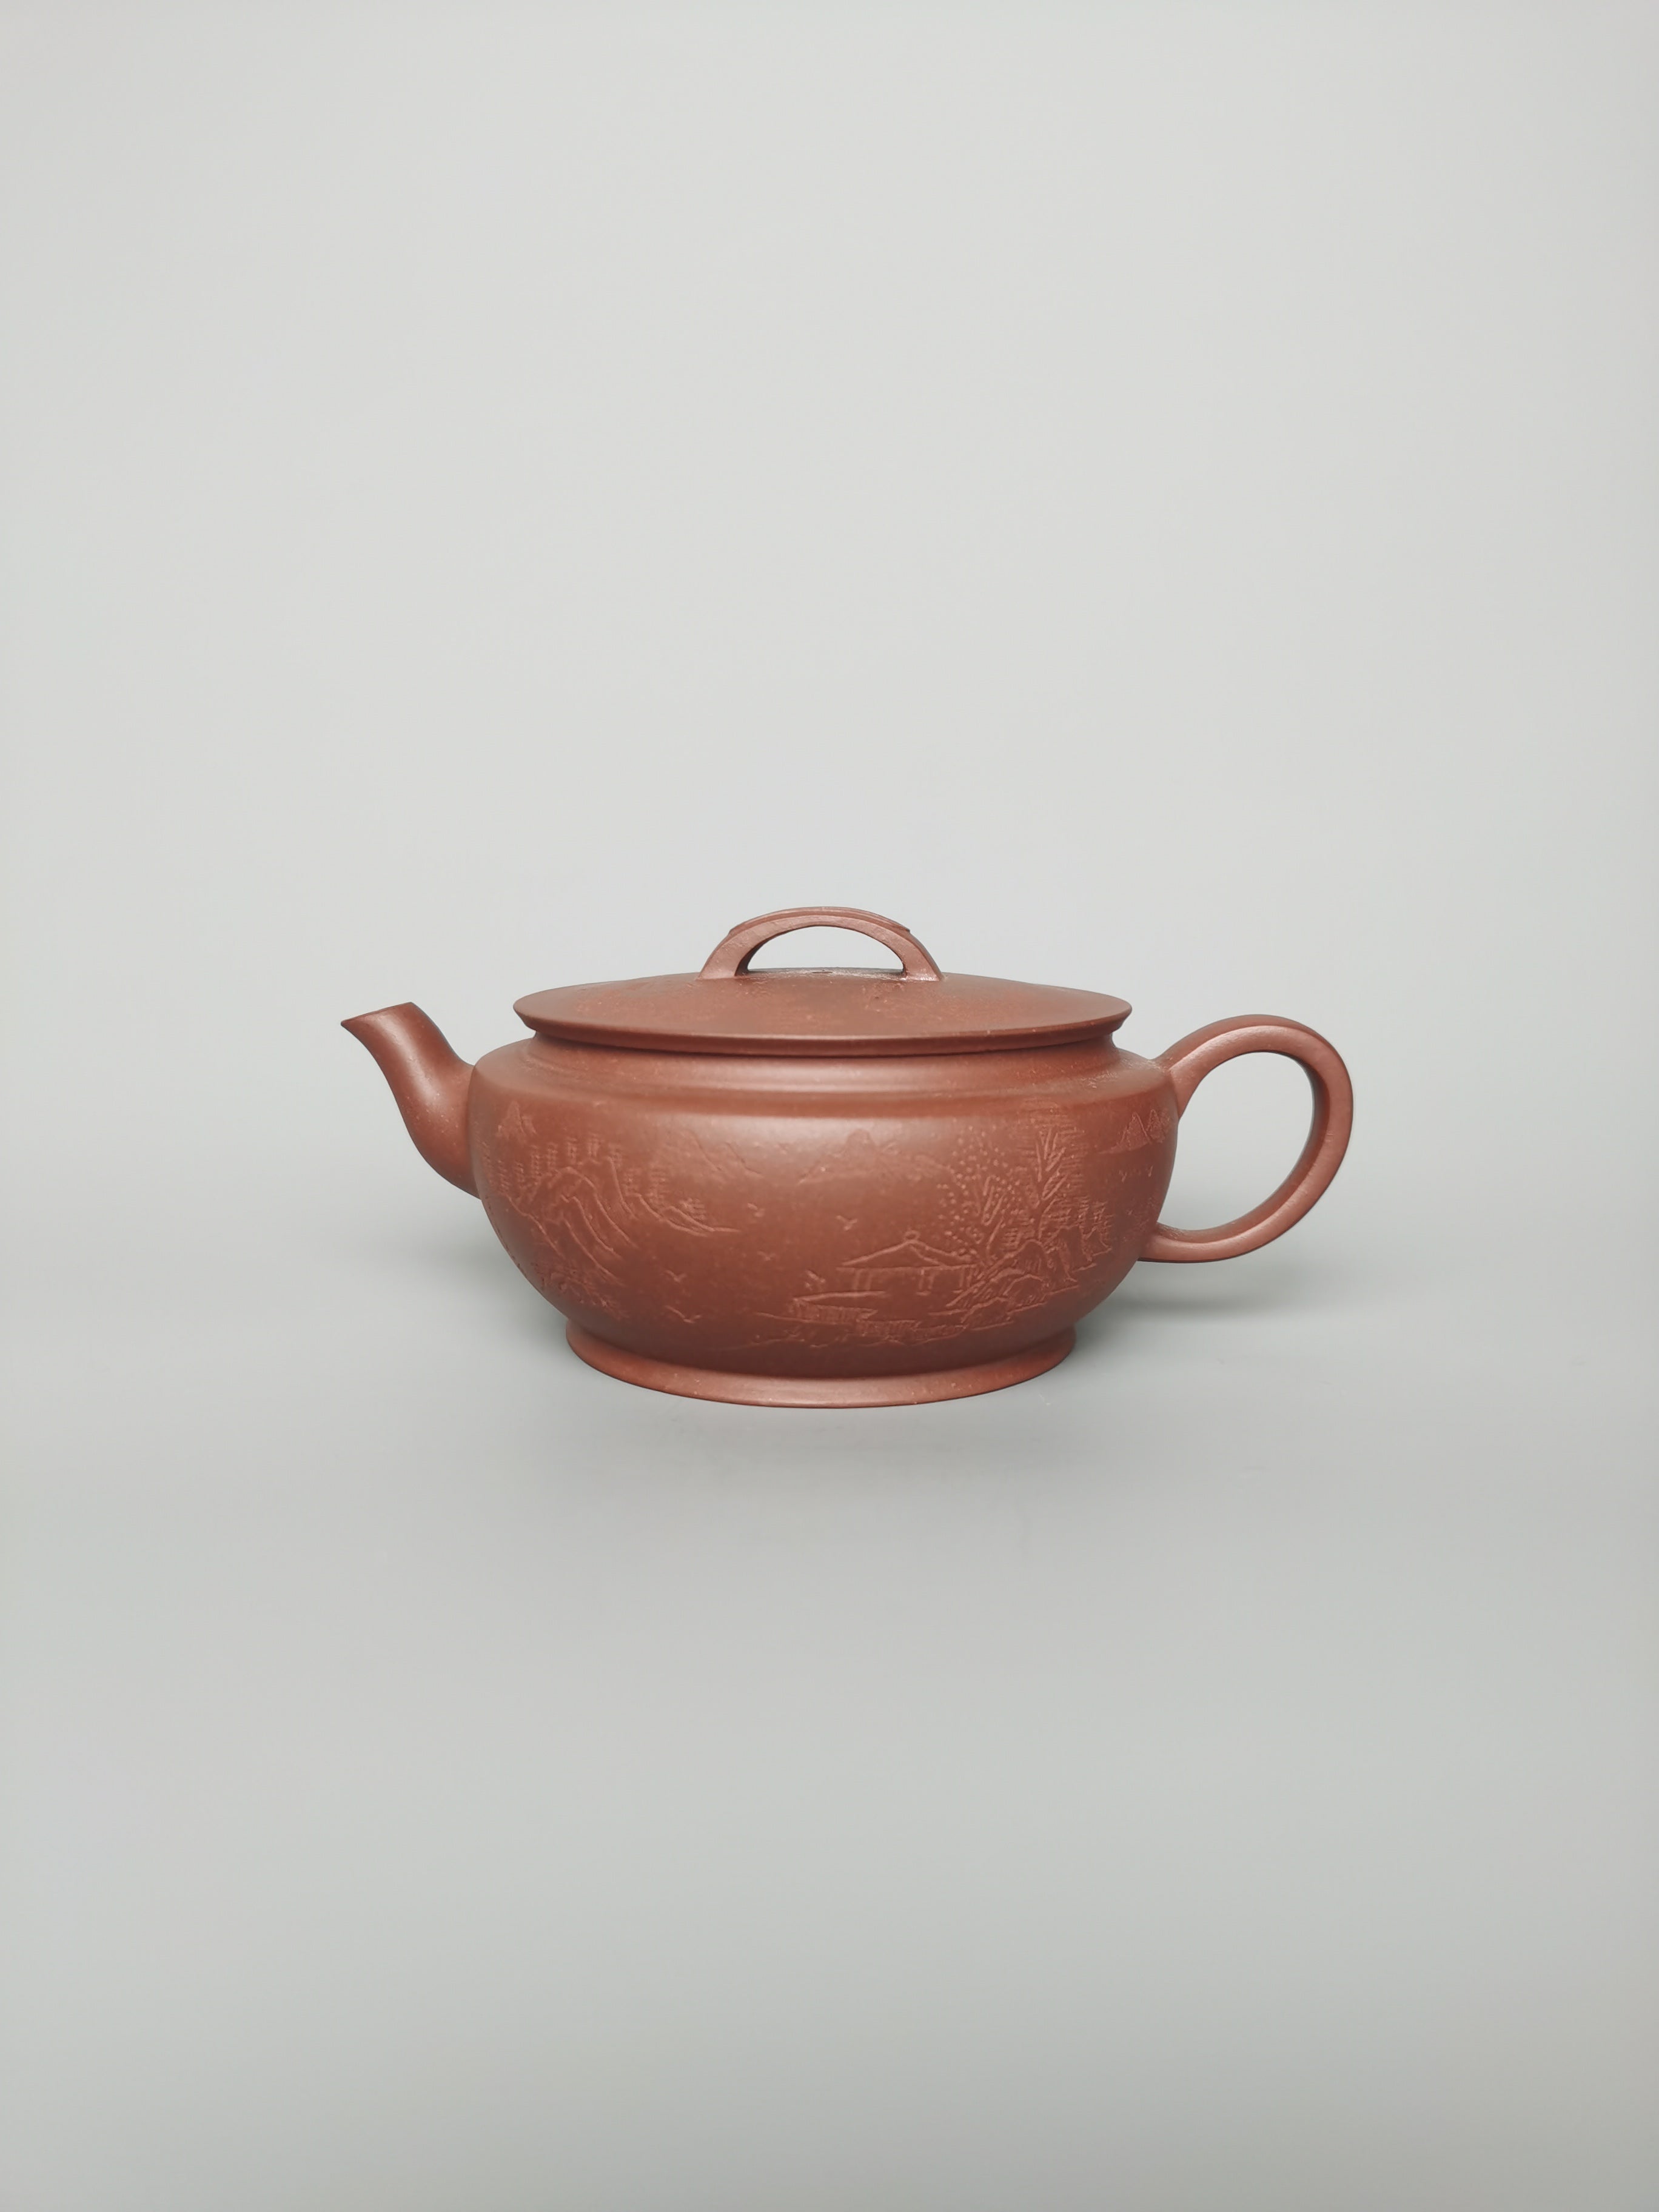 Siyutao han wa 200ml full handcrafted yixing teapot